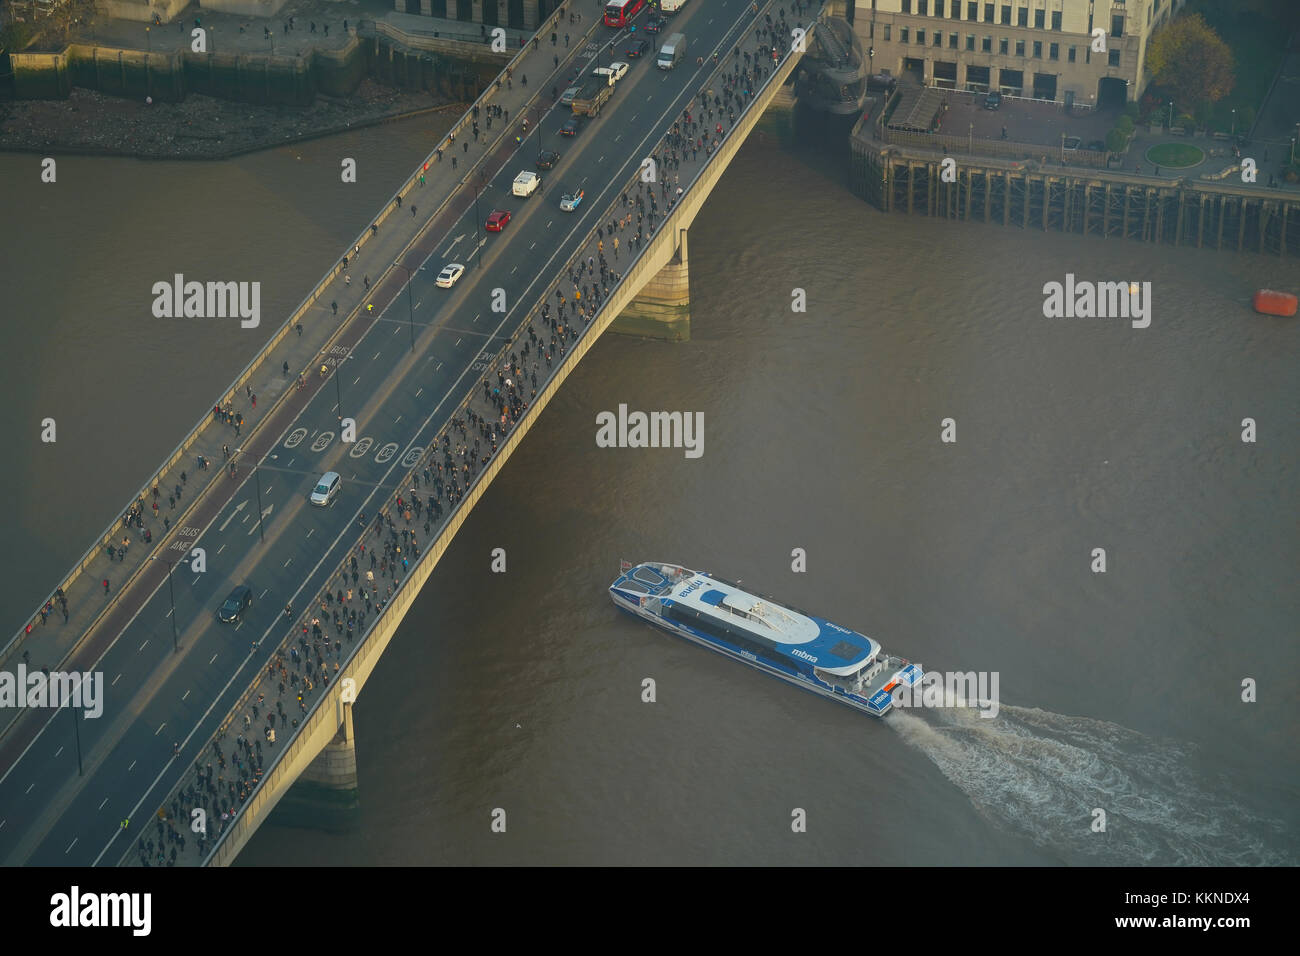 Vue d'un bateau de tourisme de passer sous le pont de Londres, où des centaines de travailleurs sont au travail à pied. à partir d'une série de photos de Londres prises à partir de la d Banque D'Images